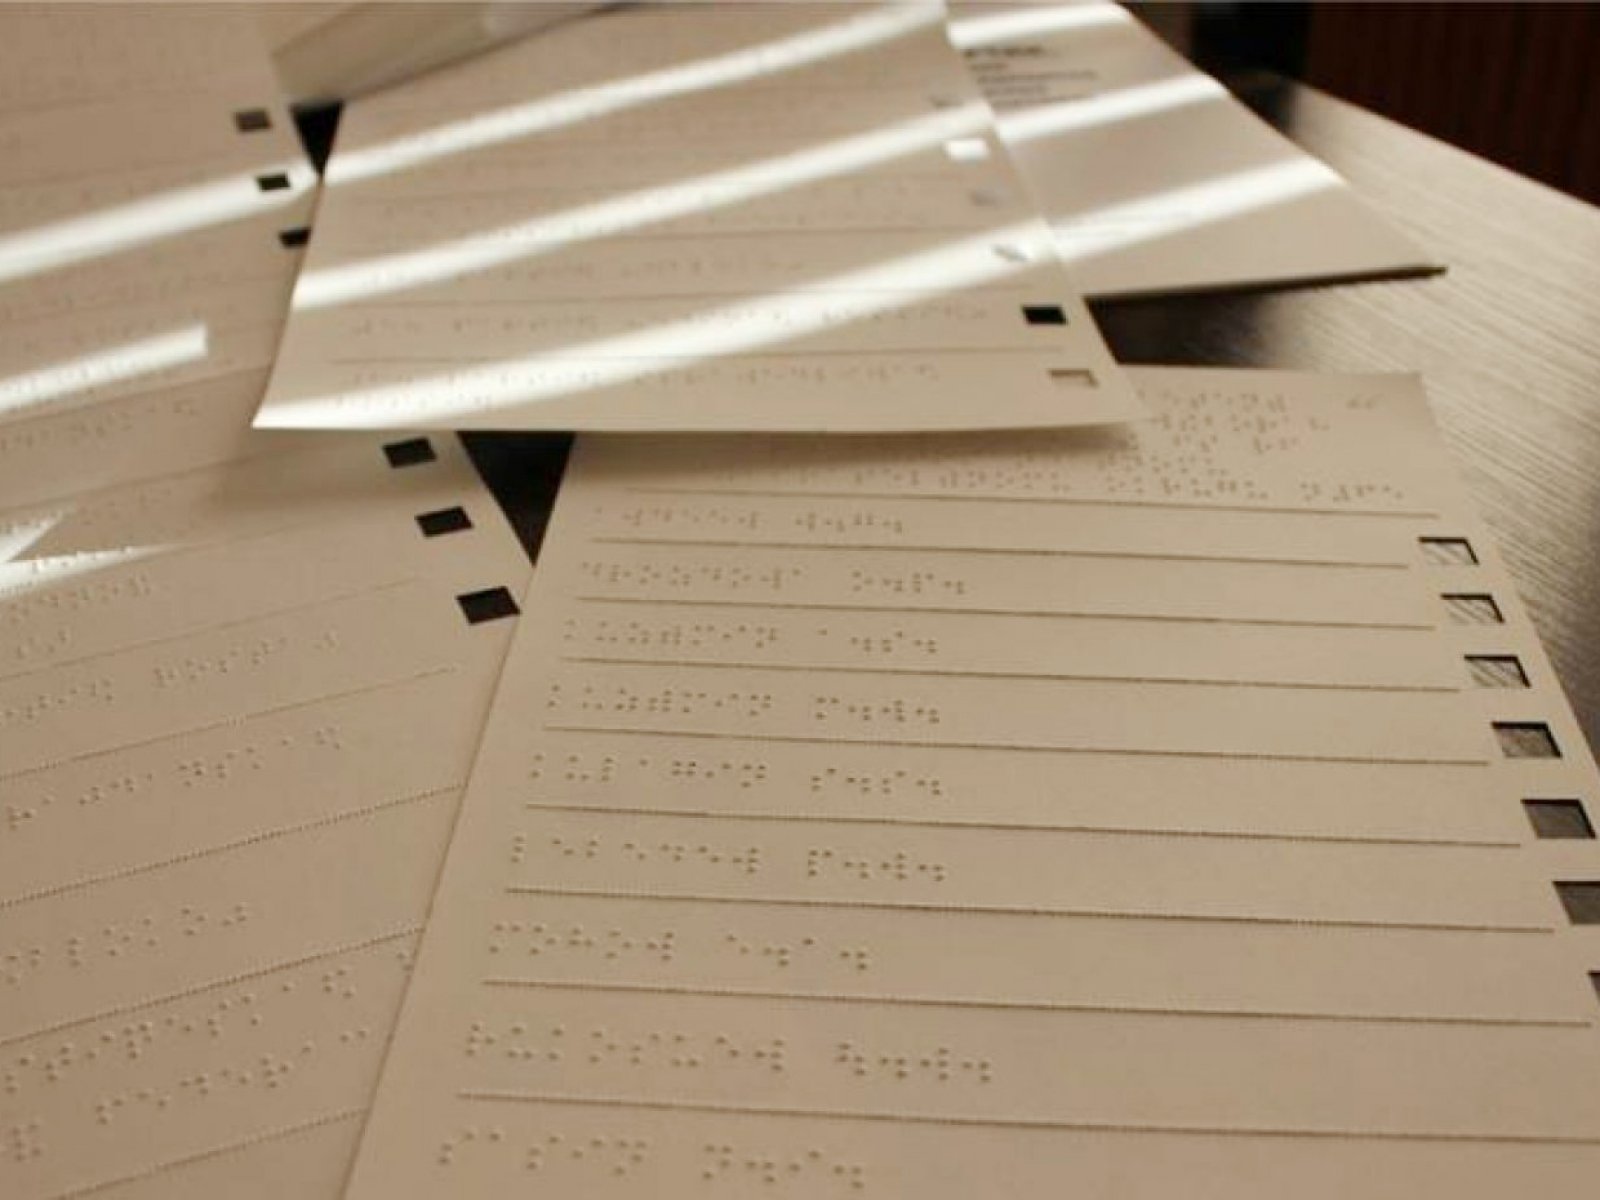  Выборы губернатора: в Свердловской области приступили к изготовлению бюллетеней азбукой Брайля